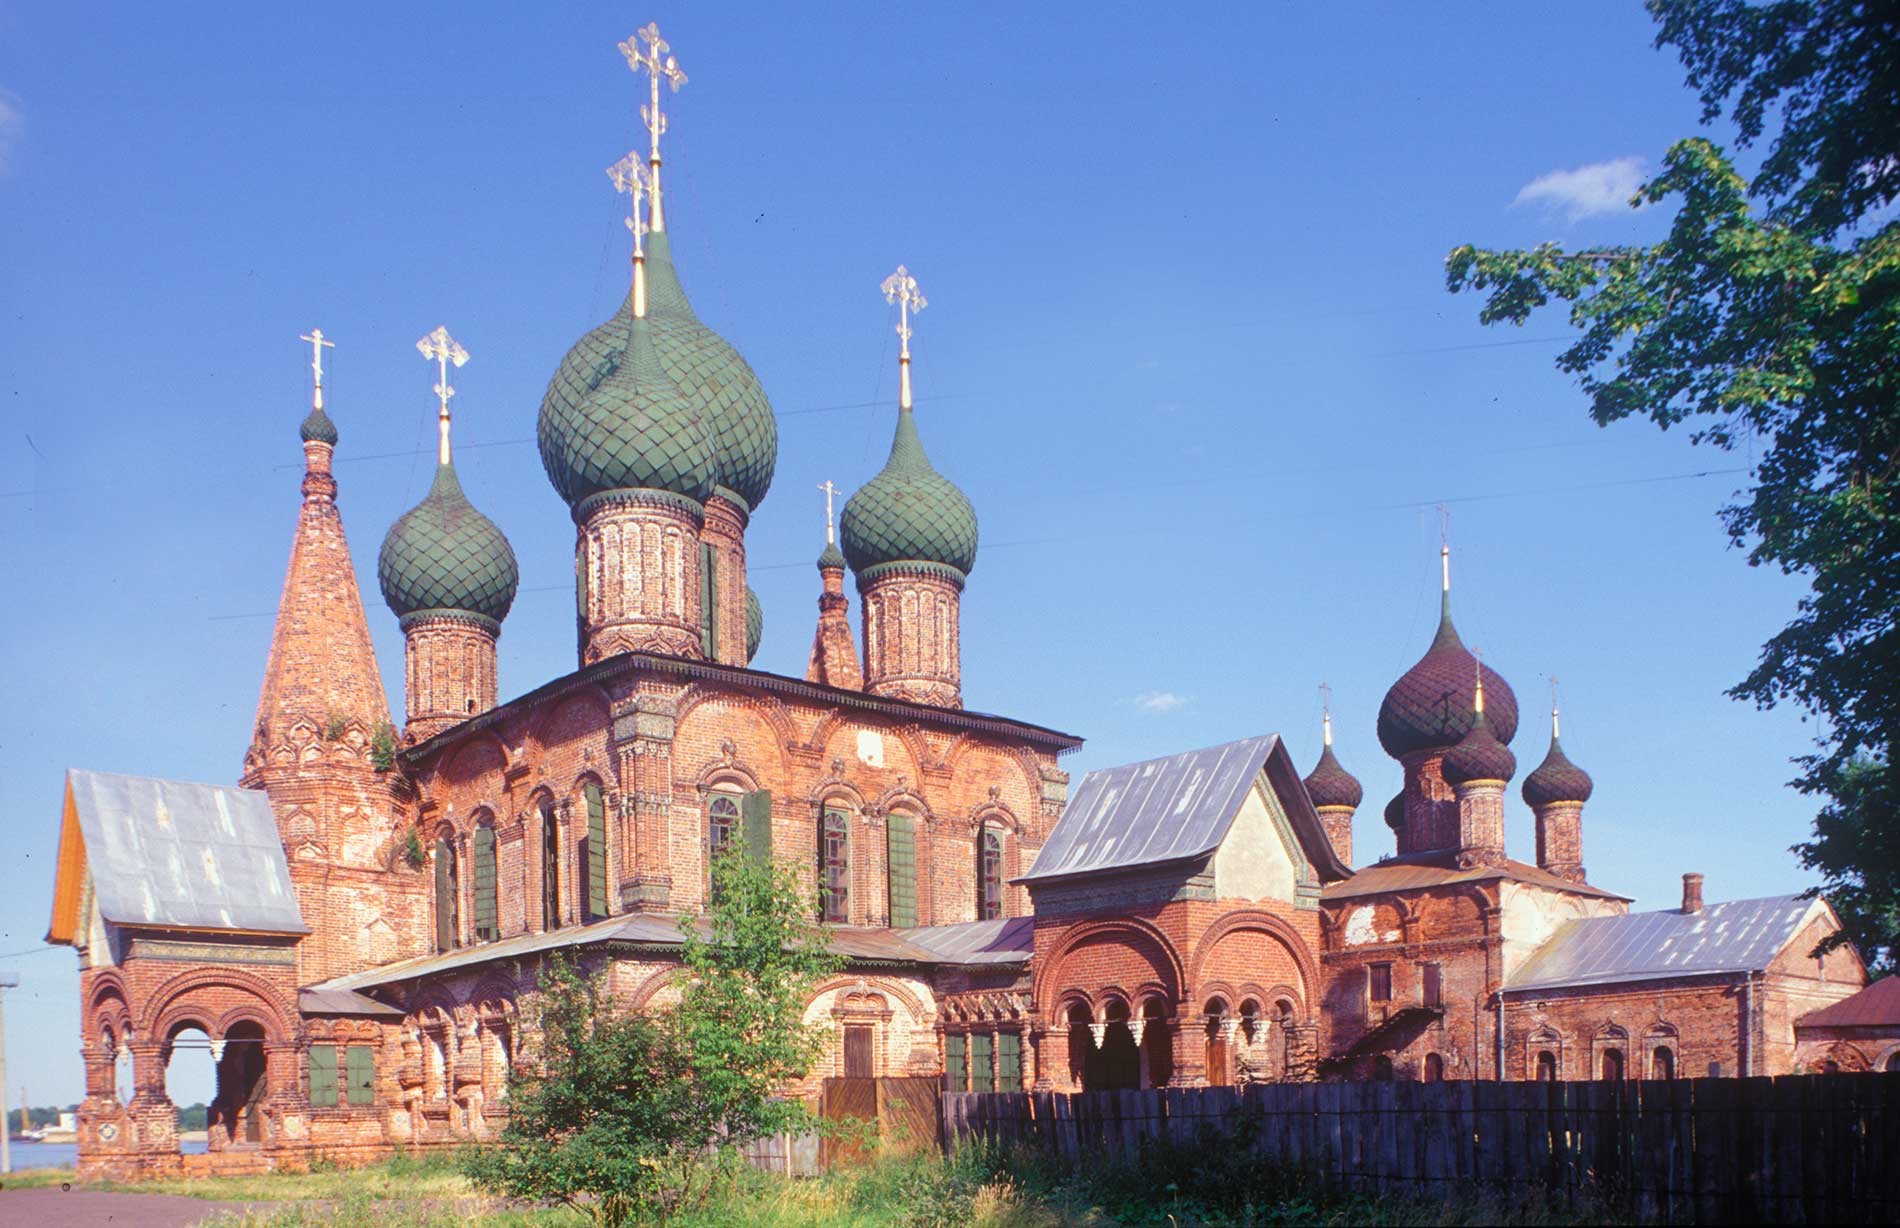 Yaroslavl. Korovniki ensemble: Church of St. John Chrysostome (left), Church of the Vladimir Icon. Northwest view. July 24, 1997.